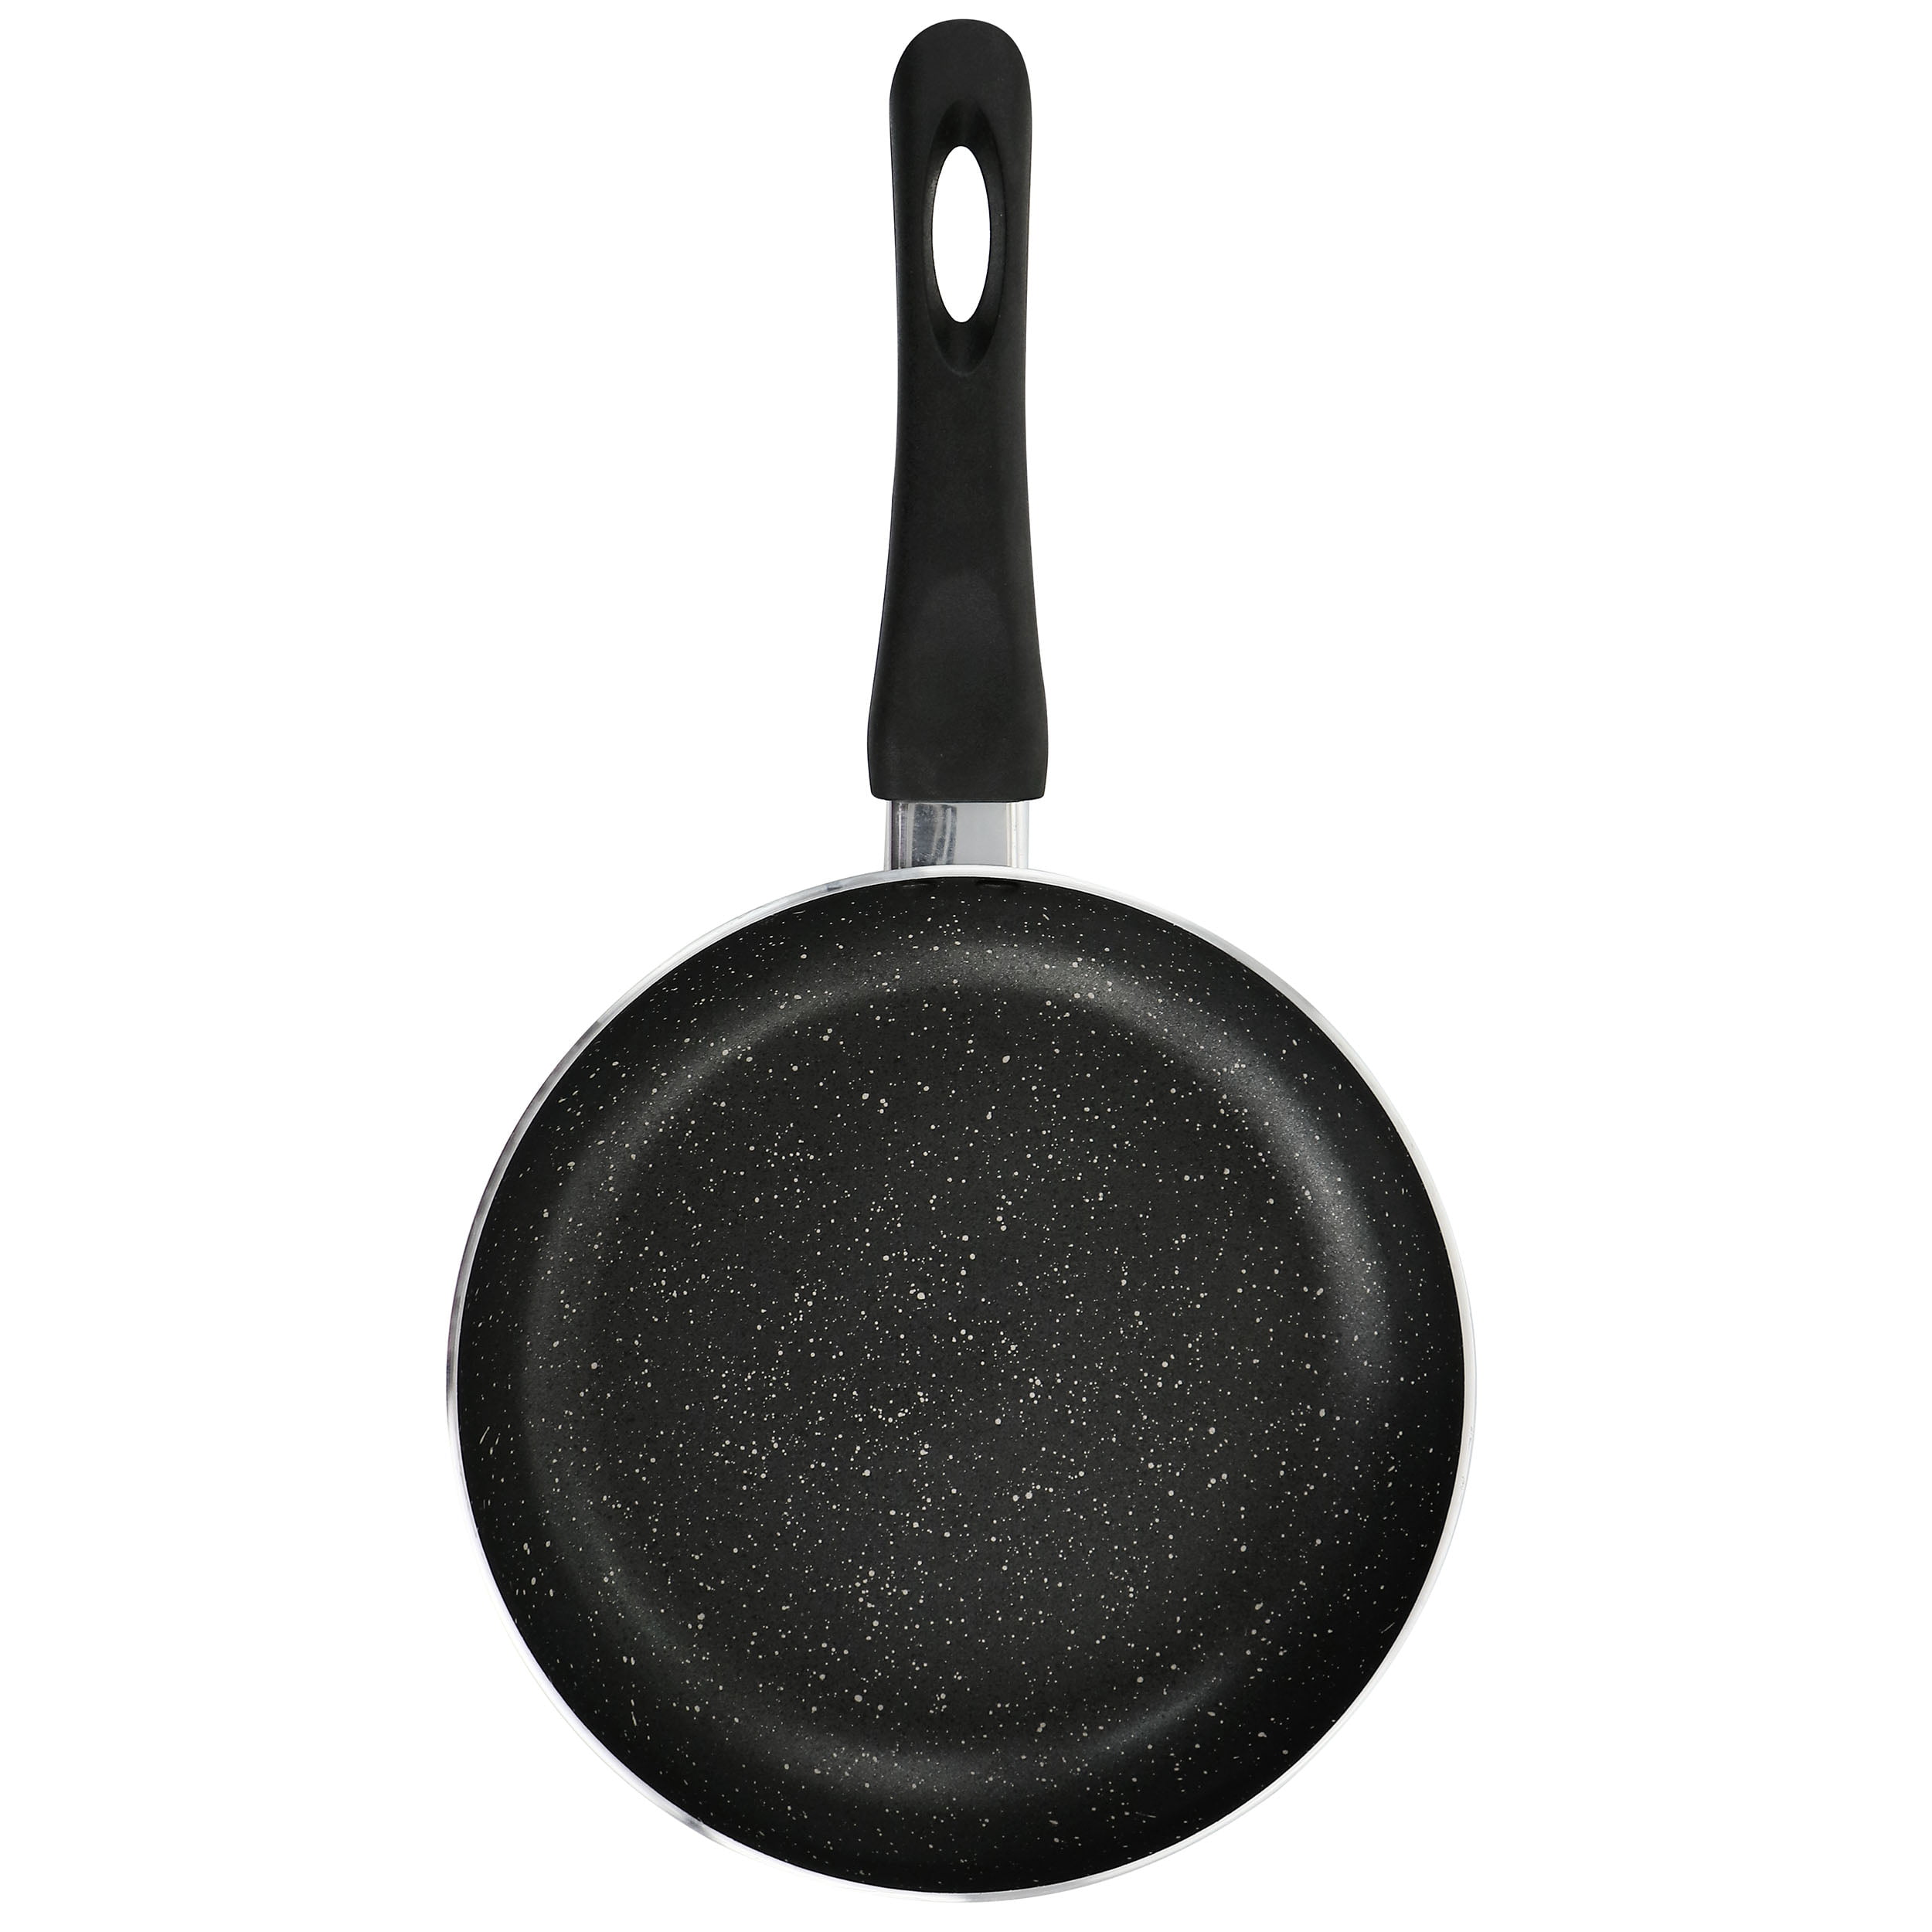 Oster Kingsway 9 .5 inch Aluminum Nonstick Frying Pan in Black